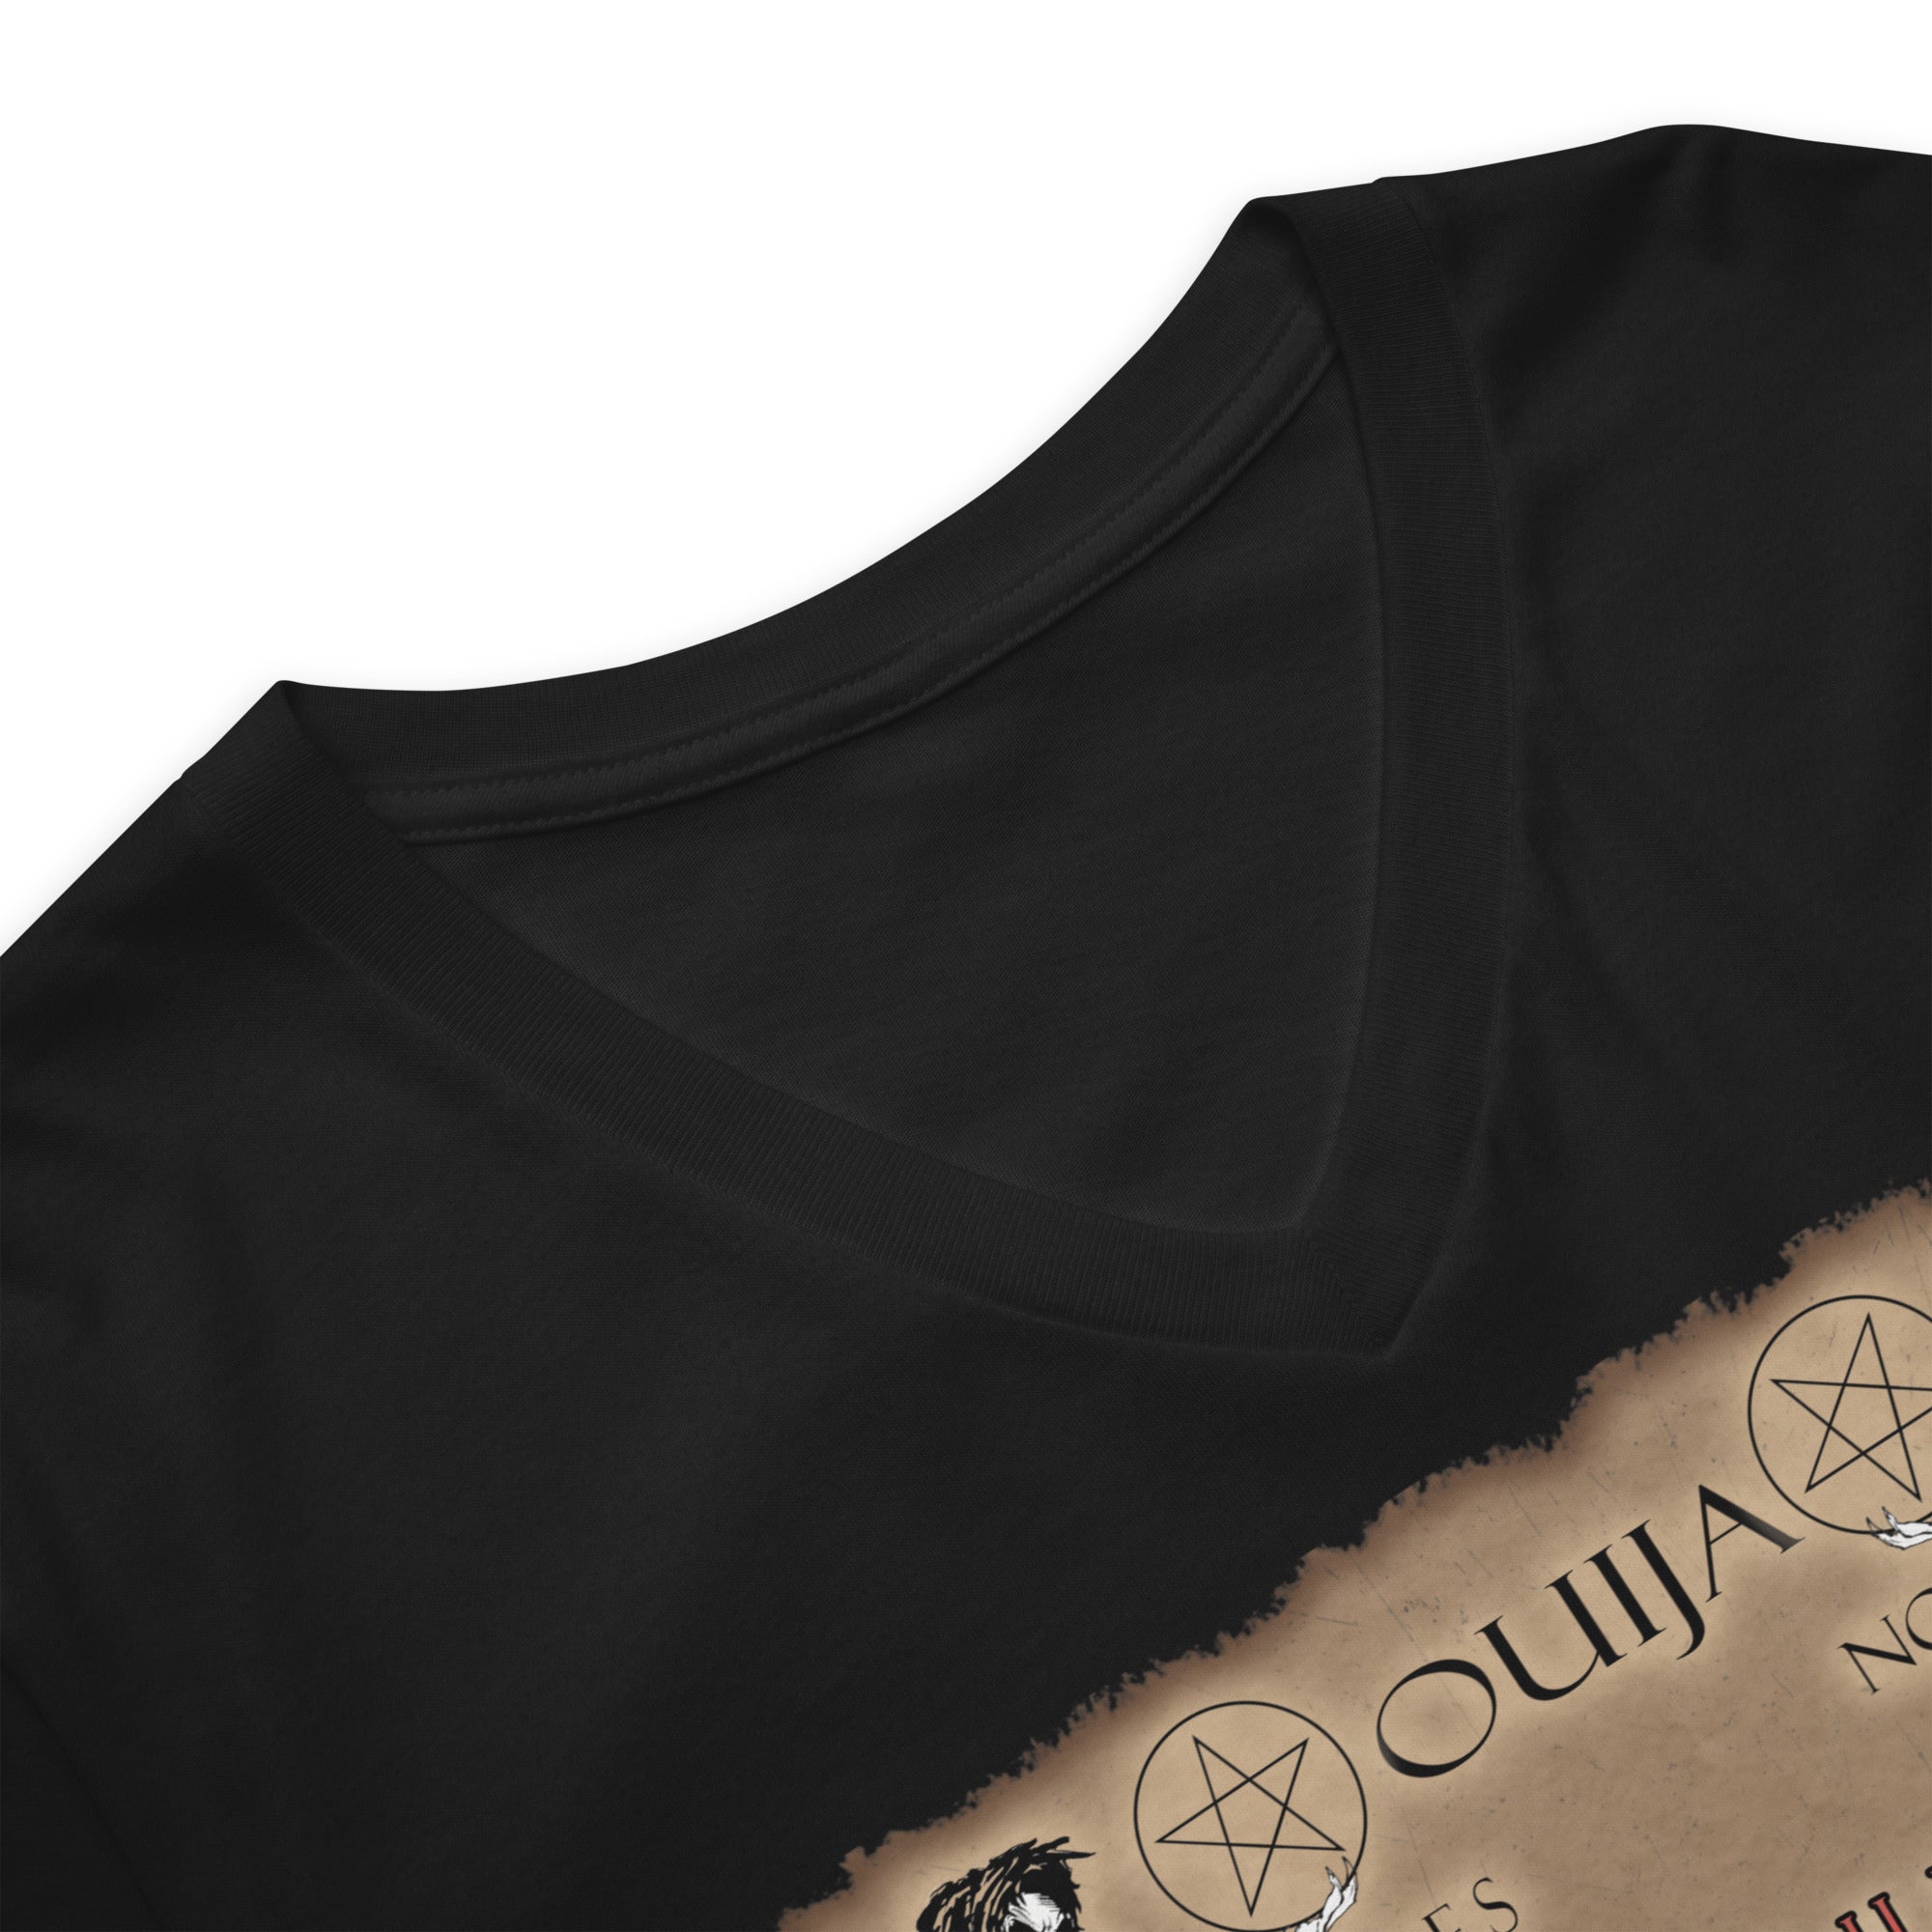 Grim Reaper Ouija Spirit Board for Halloween Horrors Women's Short Sleeve V-Neck T-Shirt - Edge of Life Designs